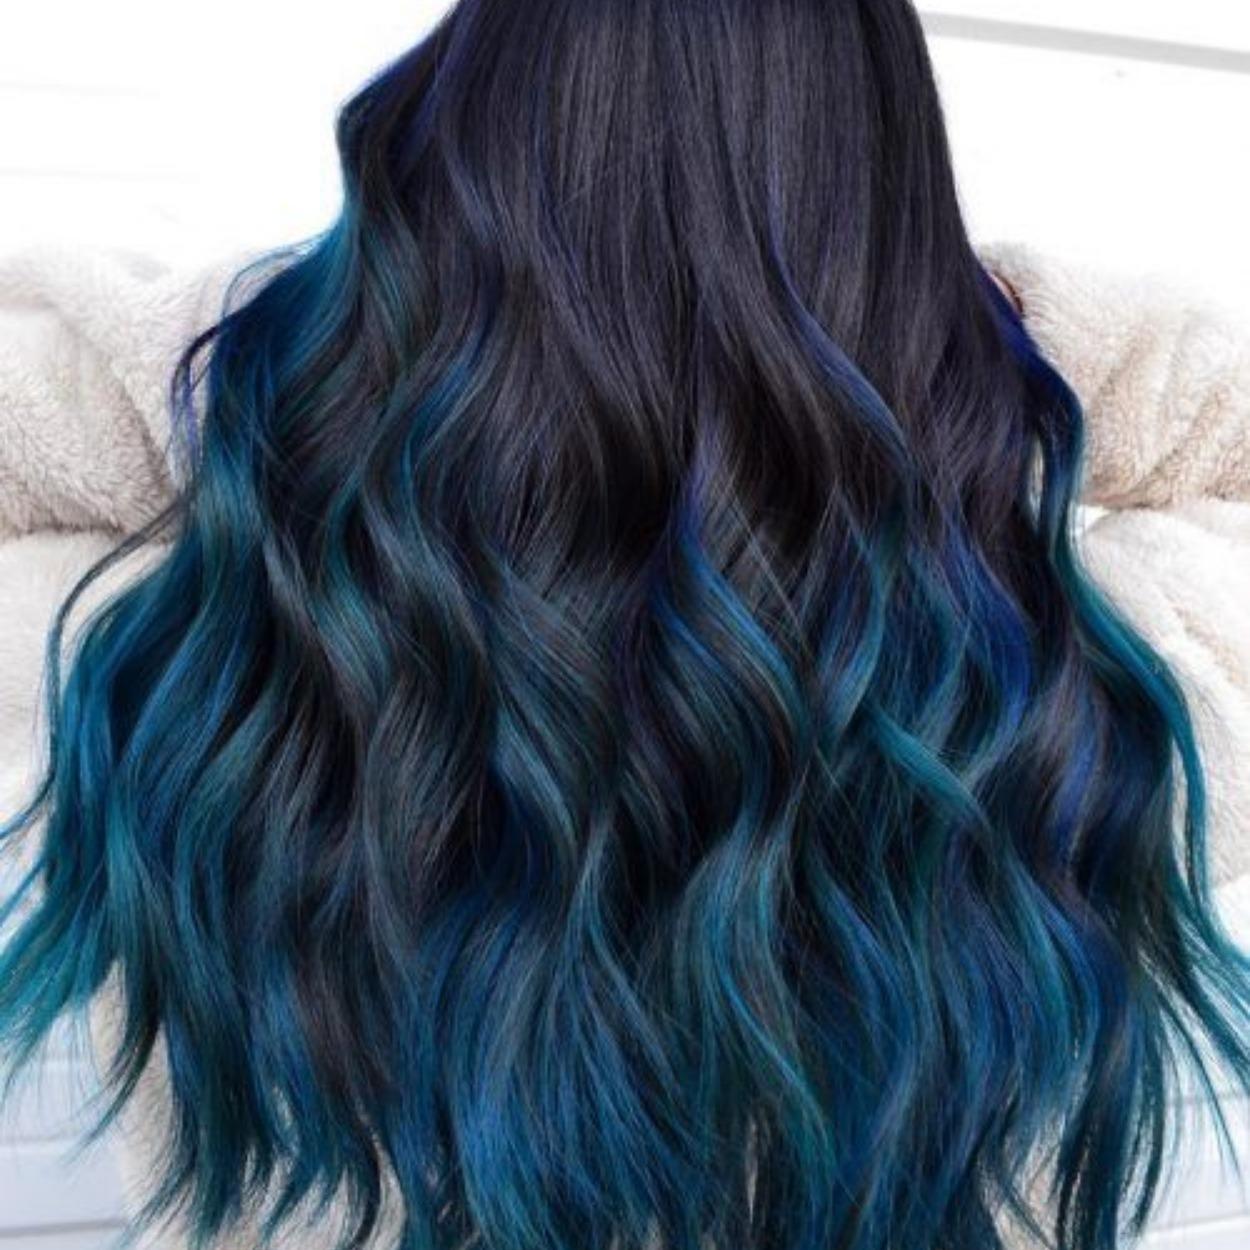 O cabelo com raiz escura natural e pontas azul neon é uma alternativa diferente para cores de cabelo 2021